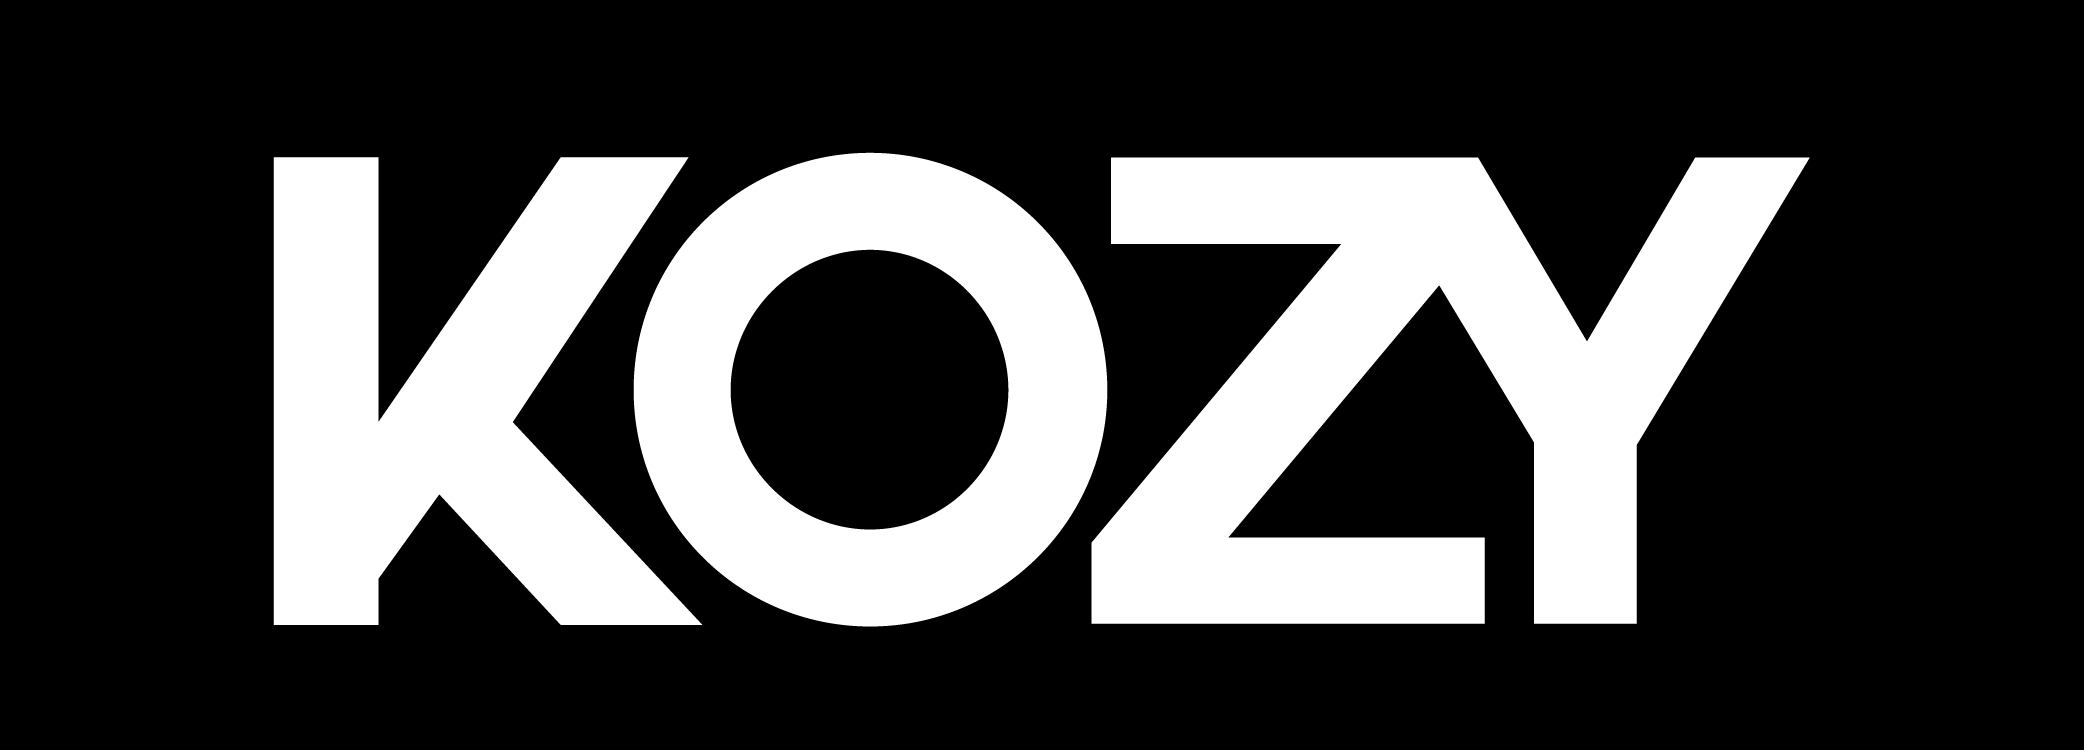 Kozy logo